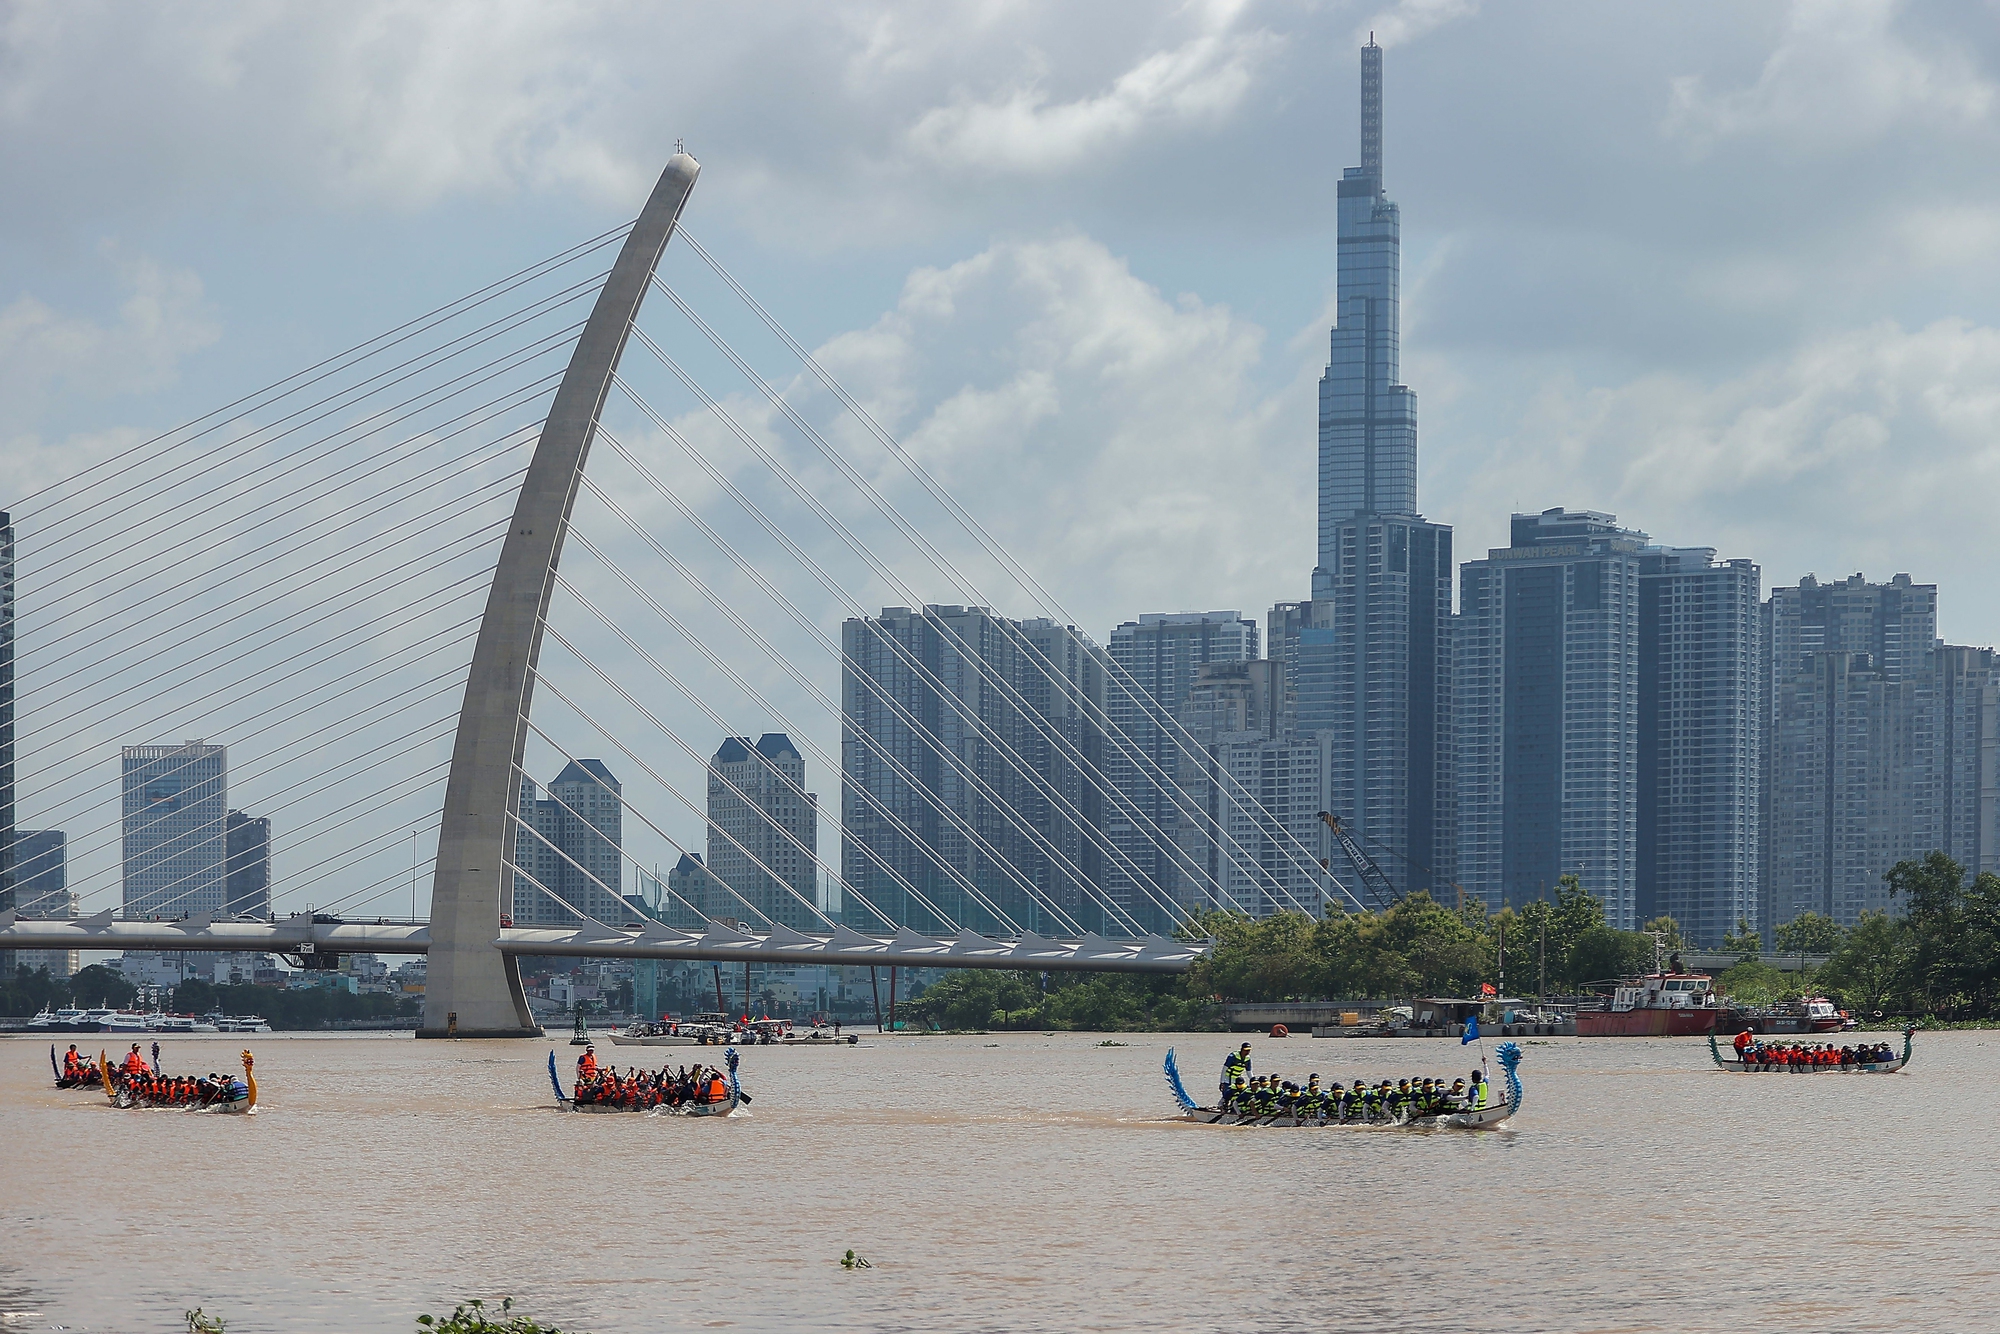 Sông Sài Gòn dậy sóng với giải đua thuyền truyền thống và trình diễn thể thao sông nước - Ảnh 1.